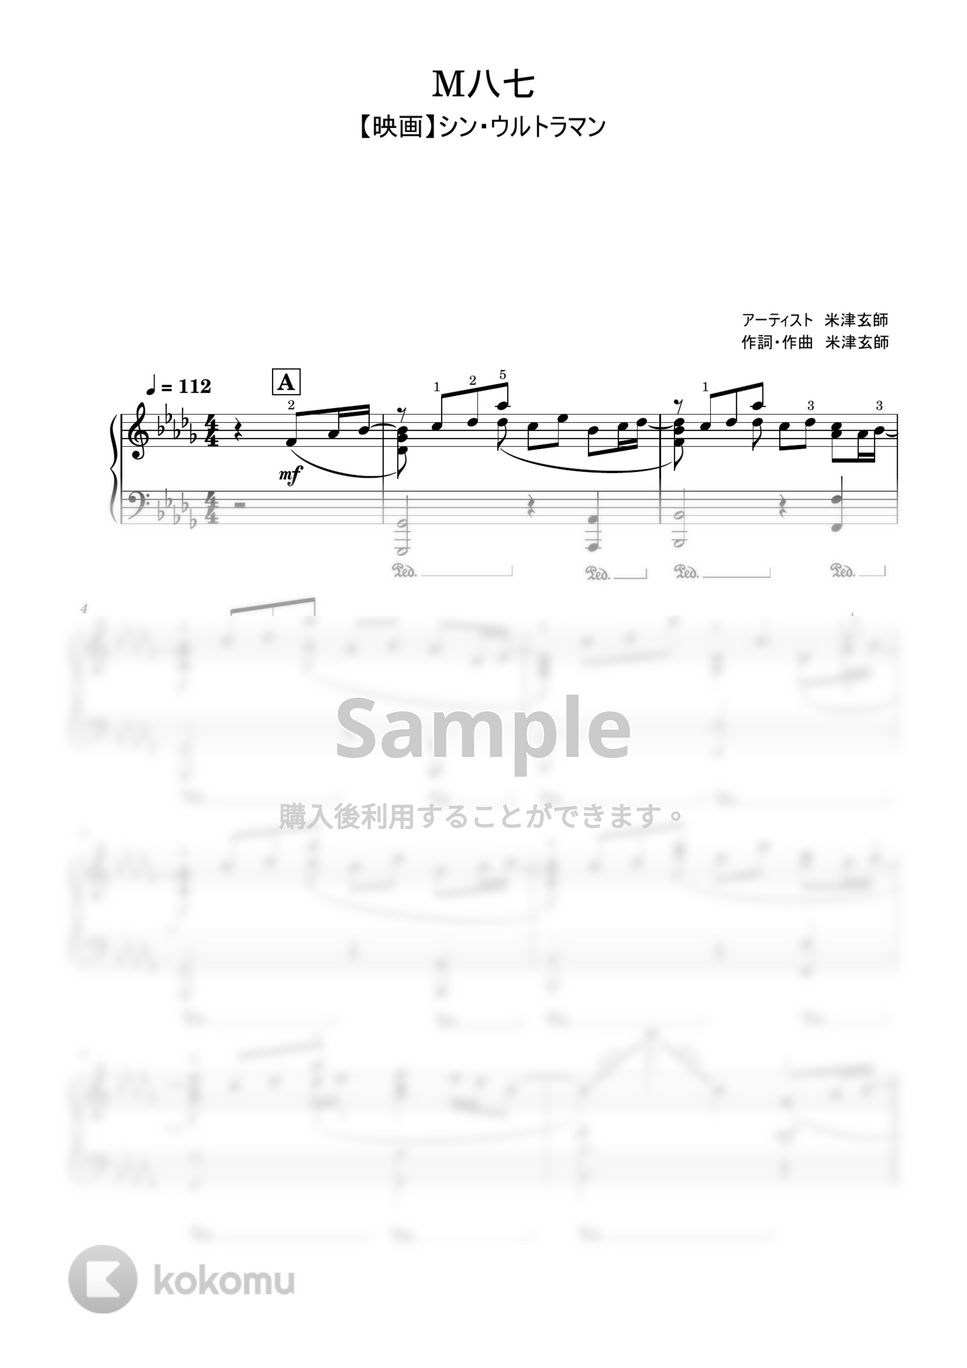 米津玄師 - M八七 (シンウルトラマン/上級レベル) by Saori8Piano